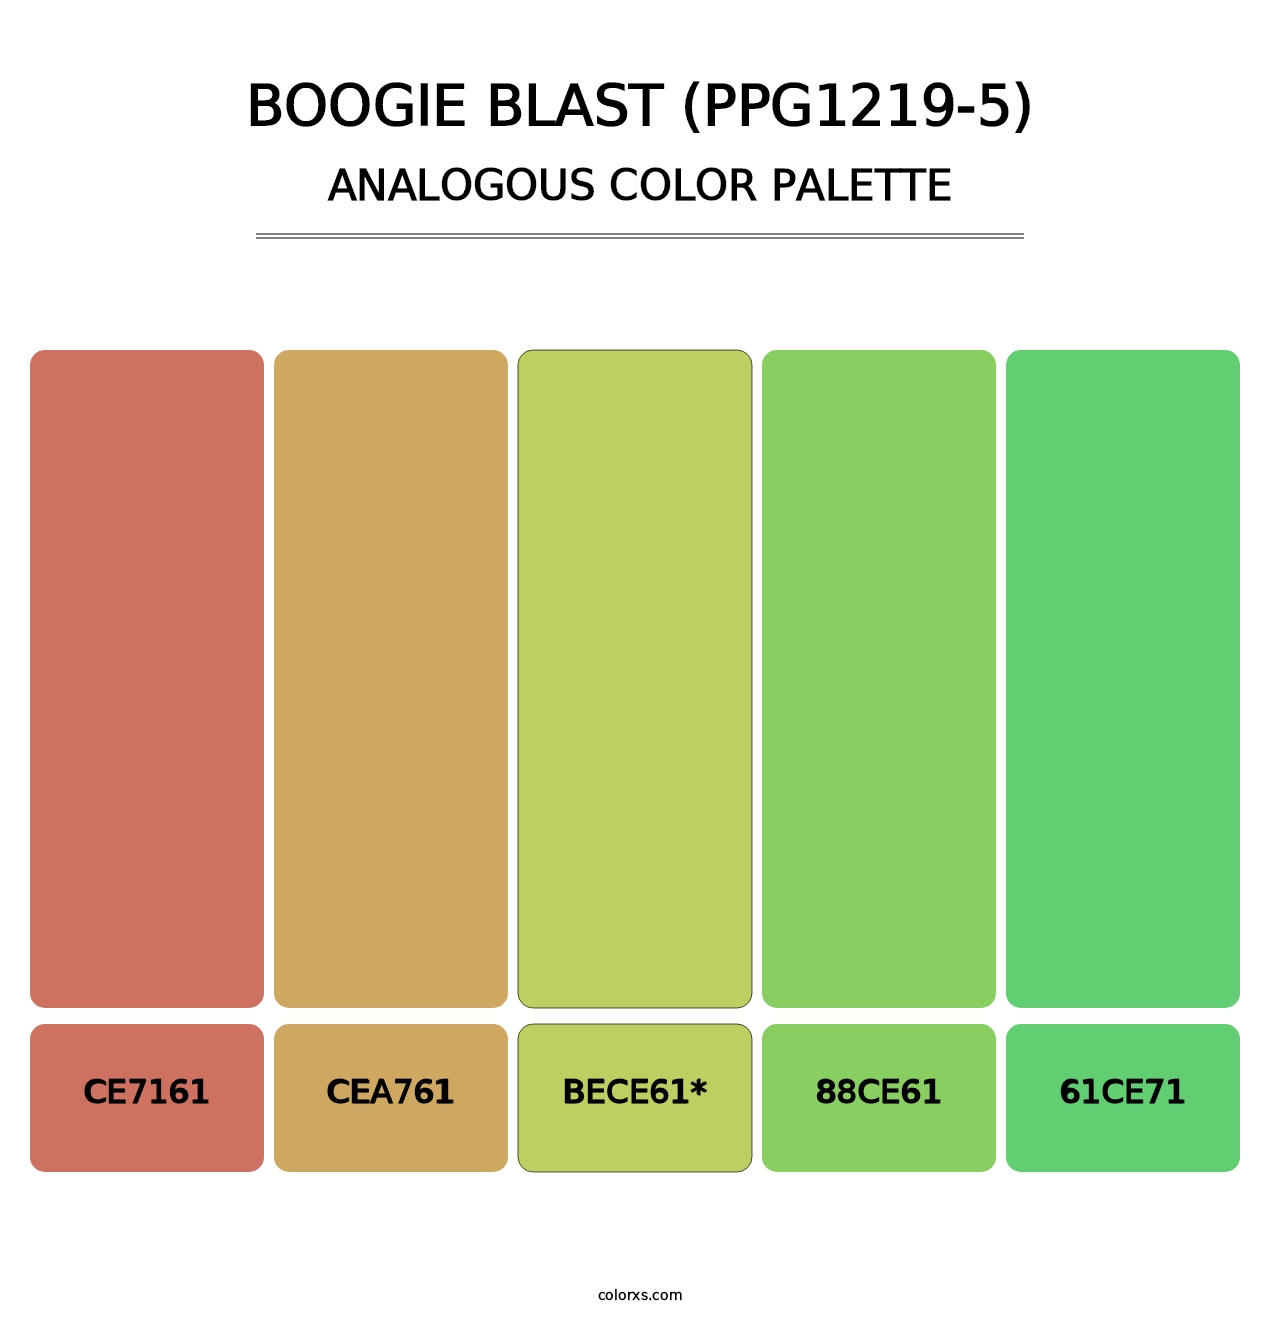 Boogie Blast (PPG1219-5) - Analogous Color Palette